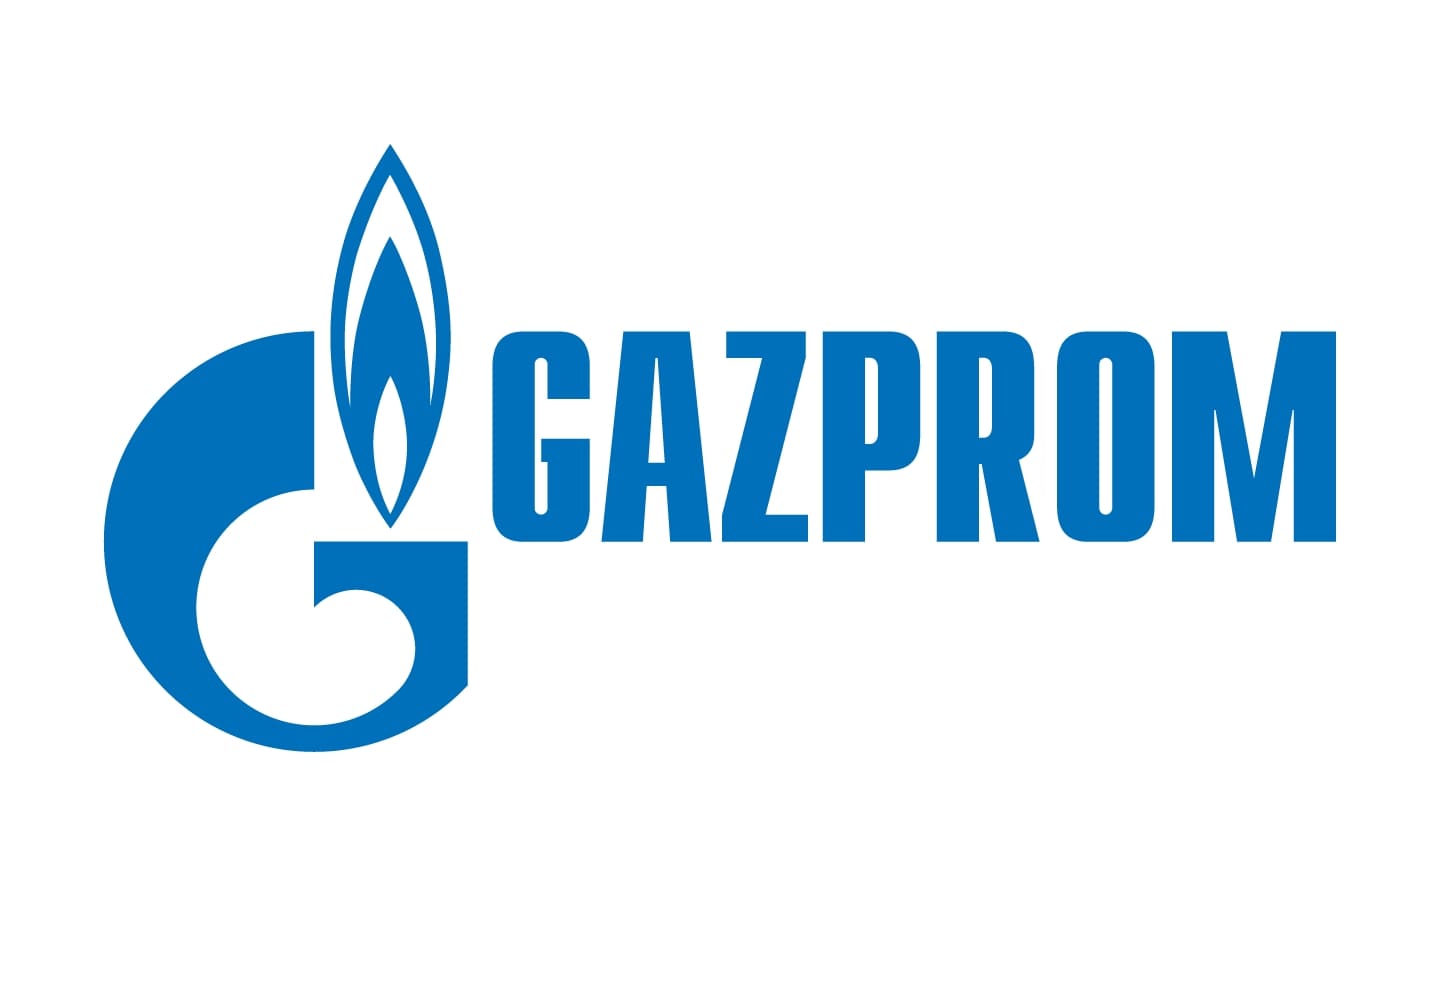 Comprar acciones Gazprom